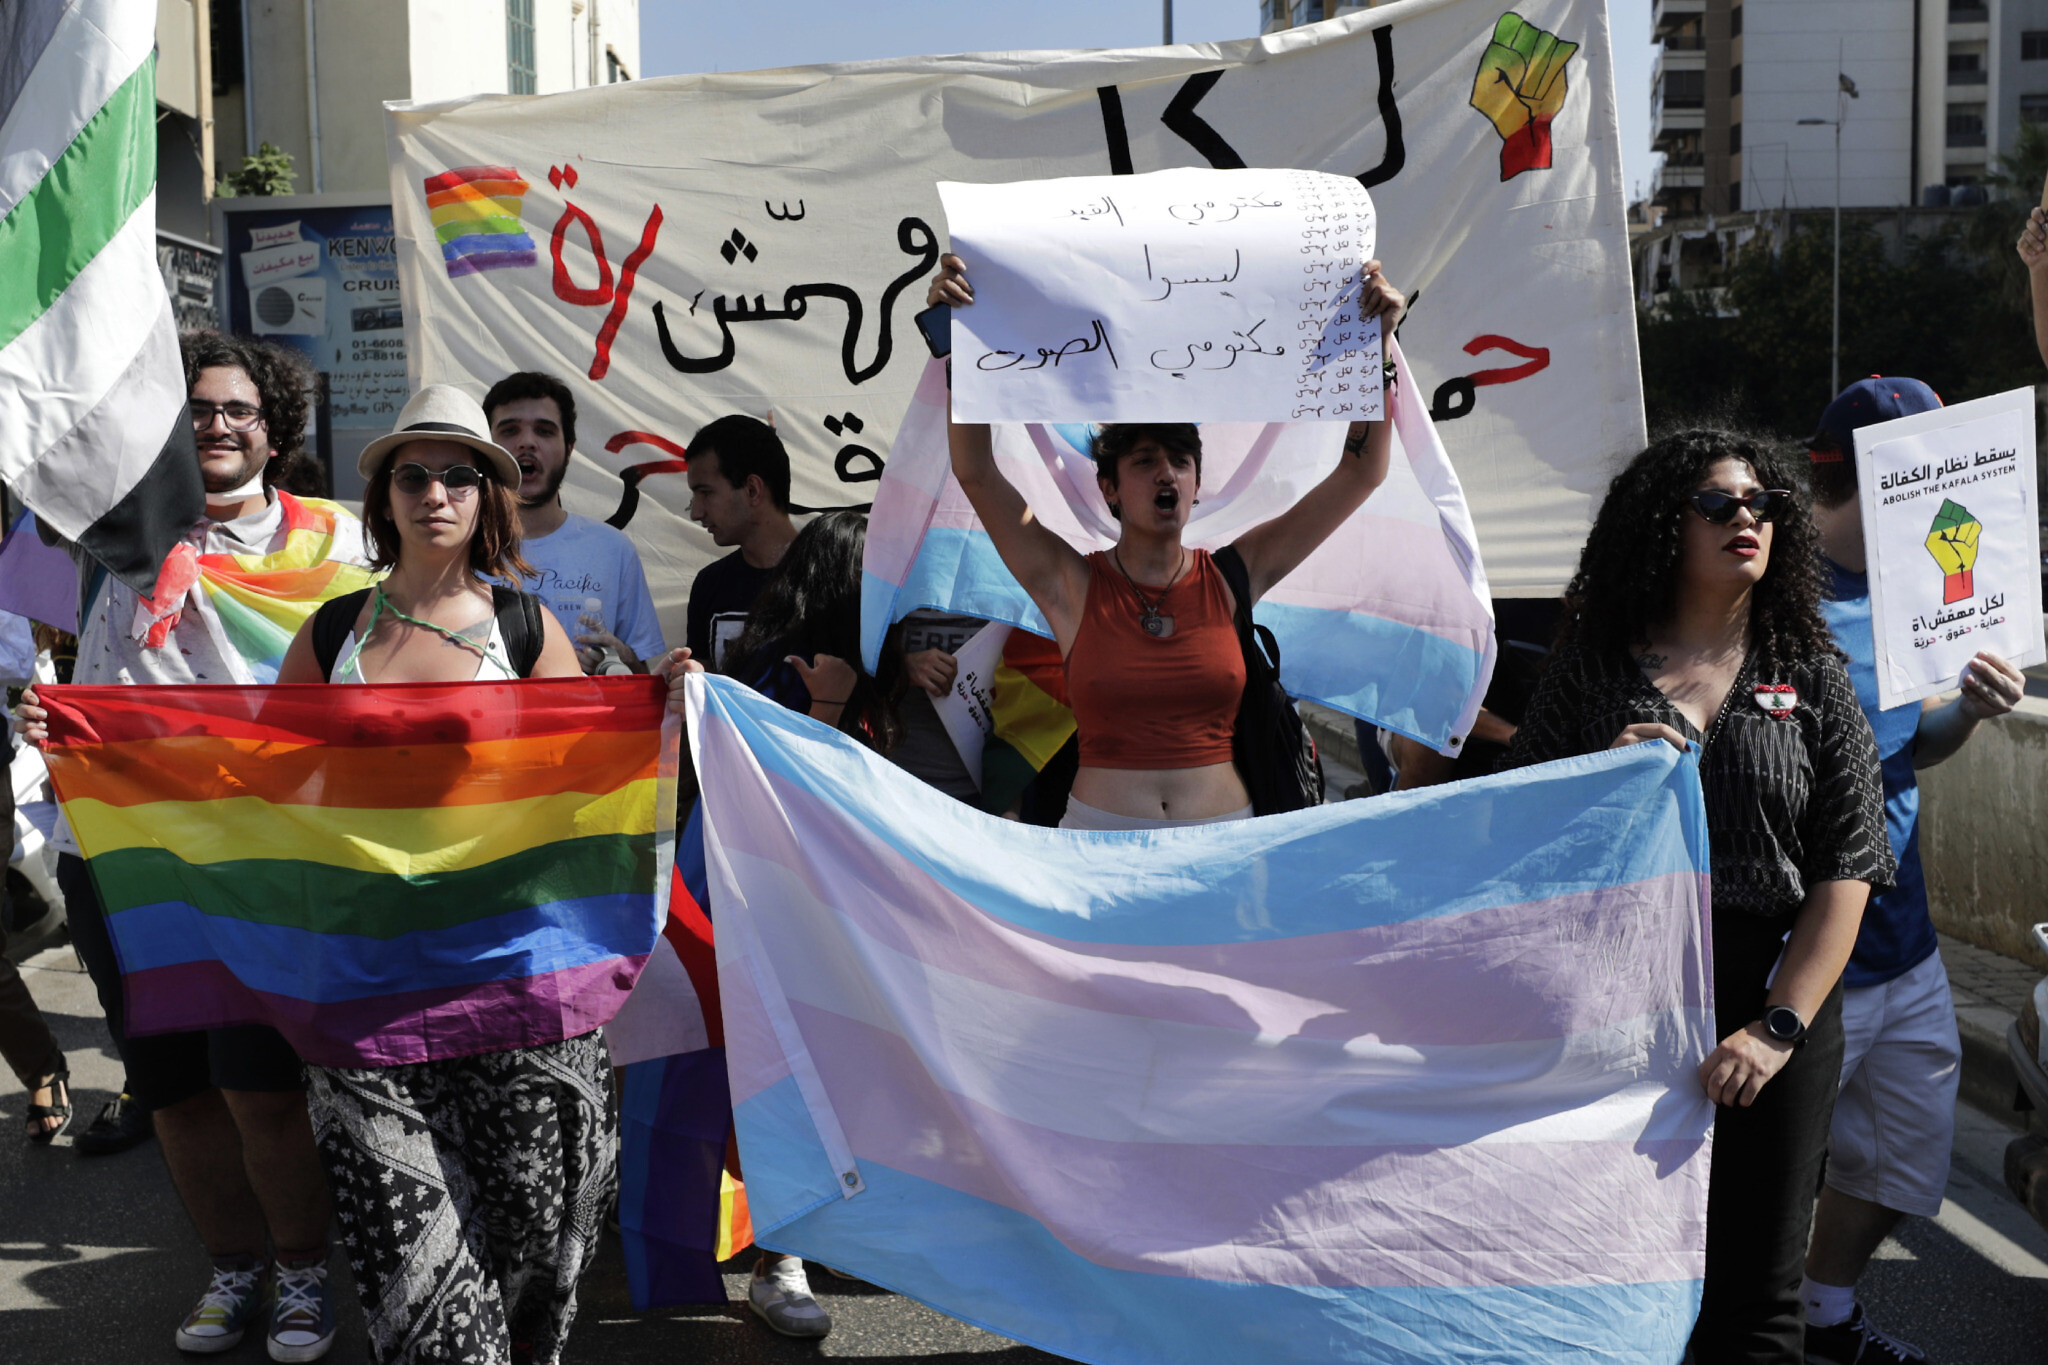 Lübnan’da (kuir) ekonomik özgürleşmeyi serbest bırakmak Kaos GL - LGBTİ+ Haber Portalı